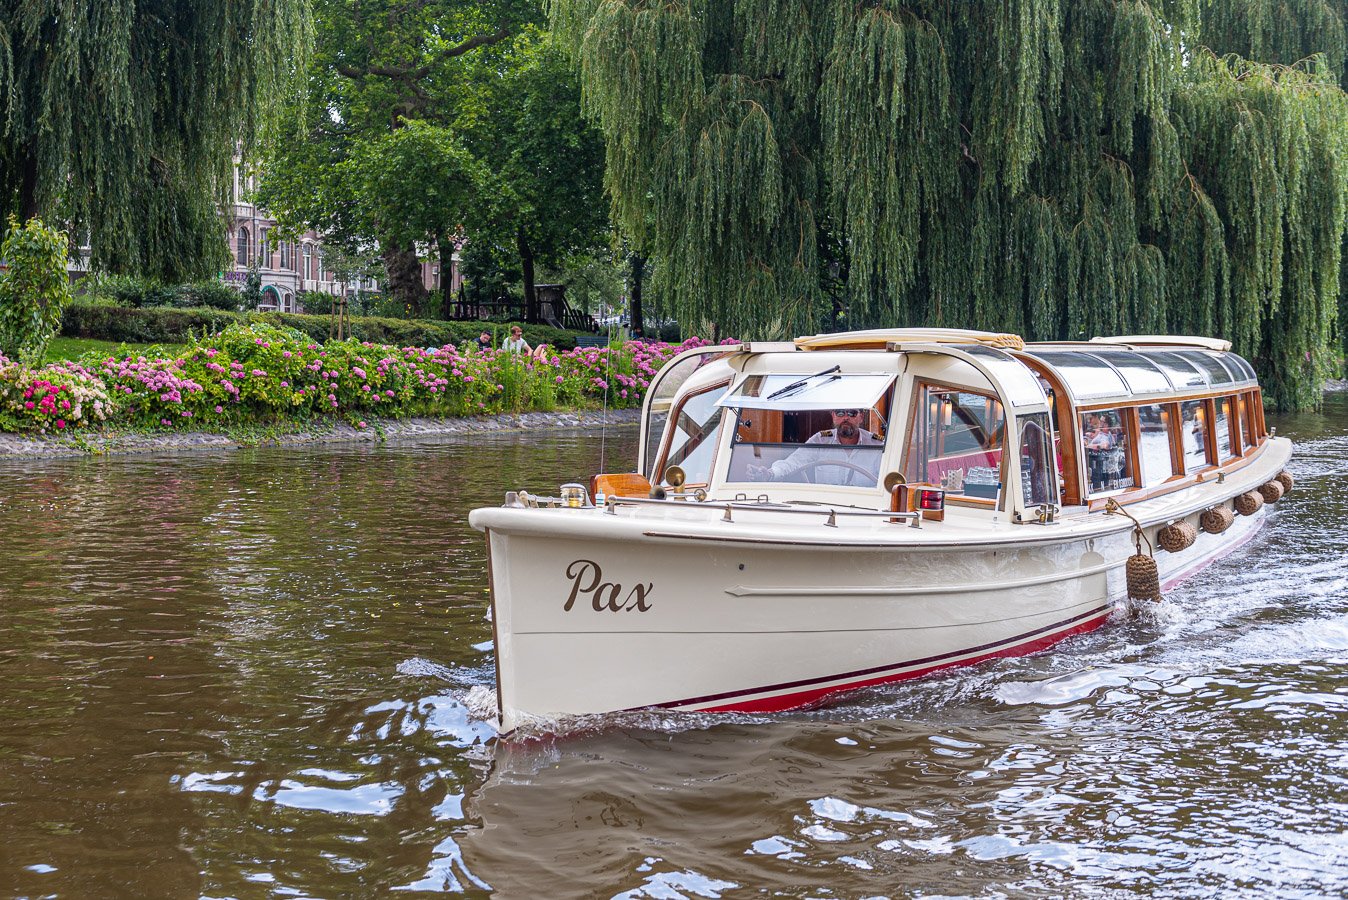 Canal cruiser Pax